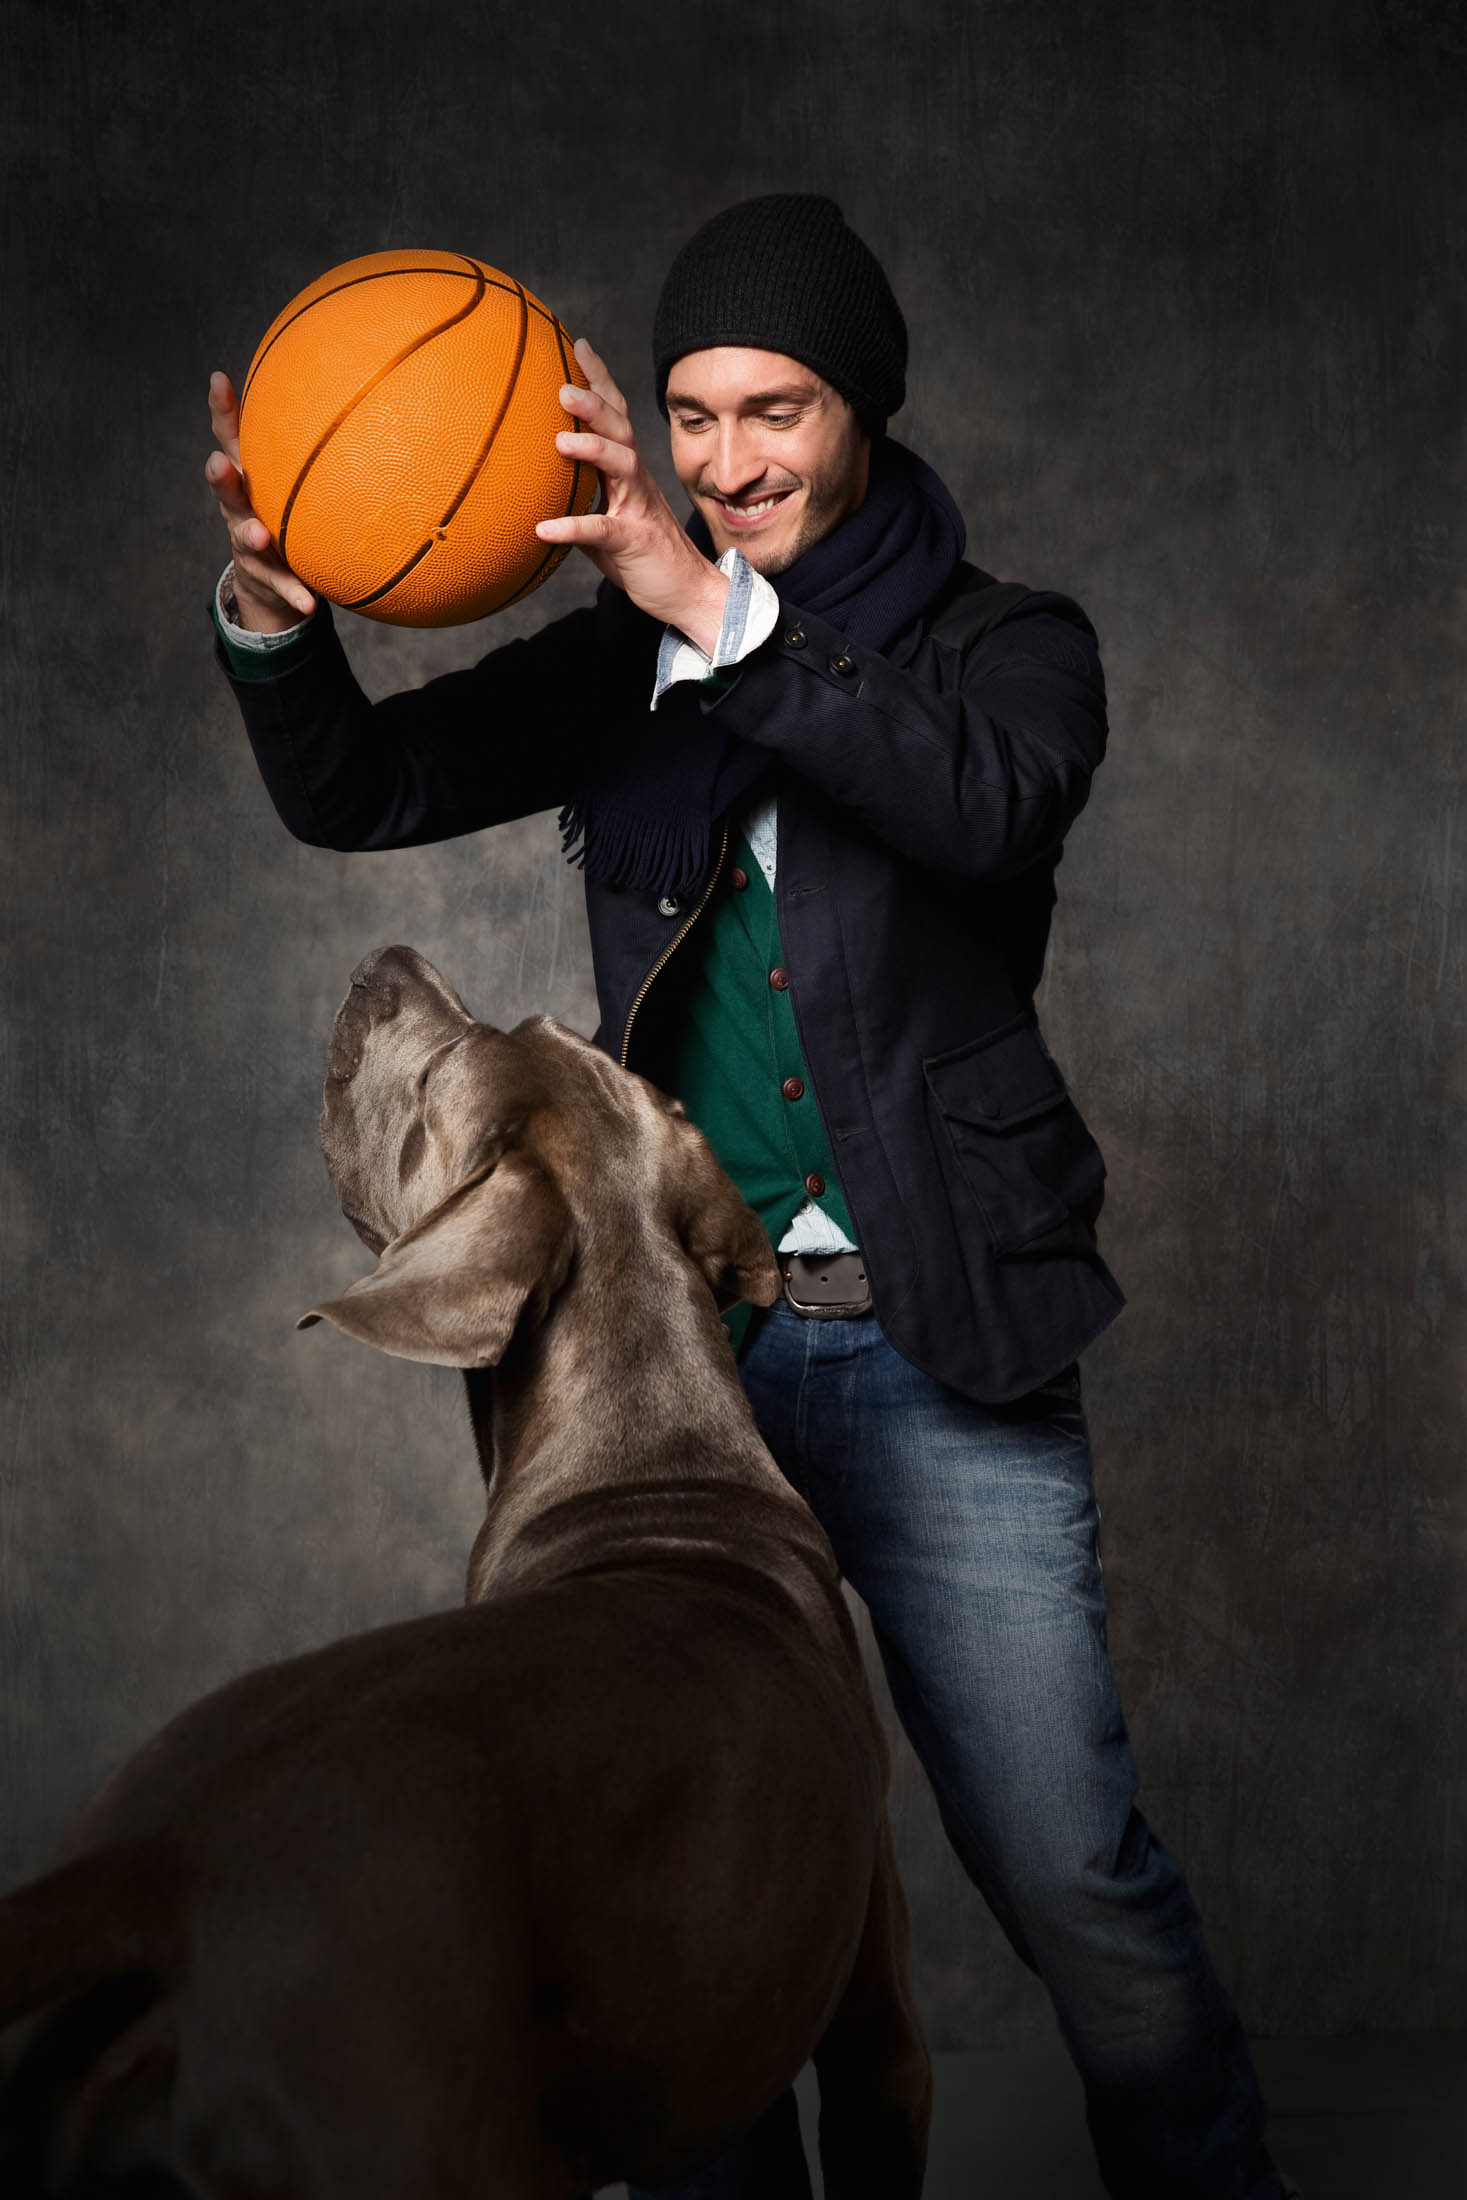 Vor einem dunkelgrauen Hintergrund hält ein Mann mit Mütze und Mantel einen Basketball über seinem Kopf und spielt spielerisch mit einem großen grauen Hund, der hochspringt, um ihn zu erreichen. © Fotografie Tomas Rodriguez